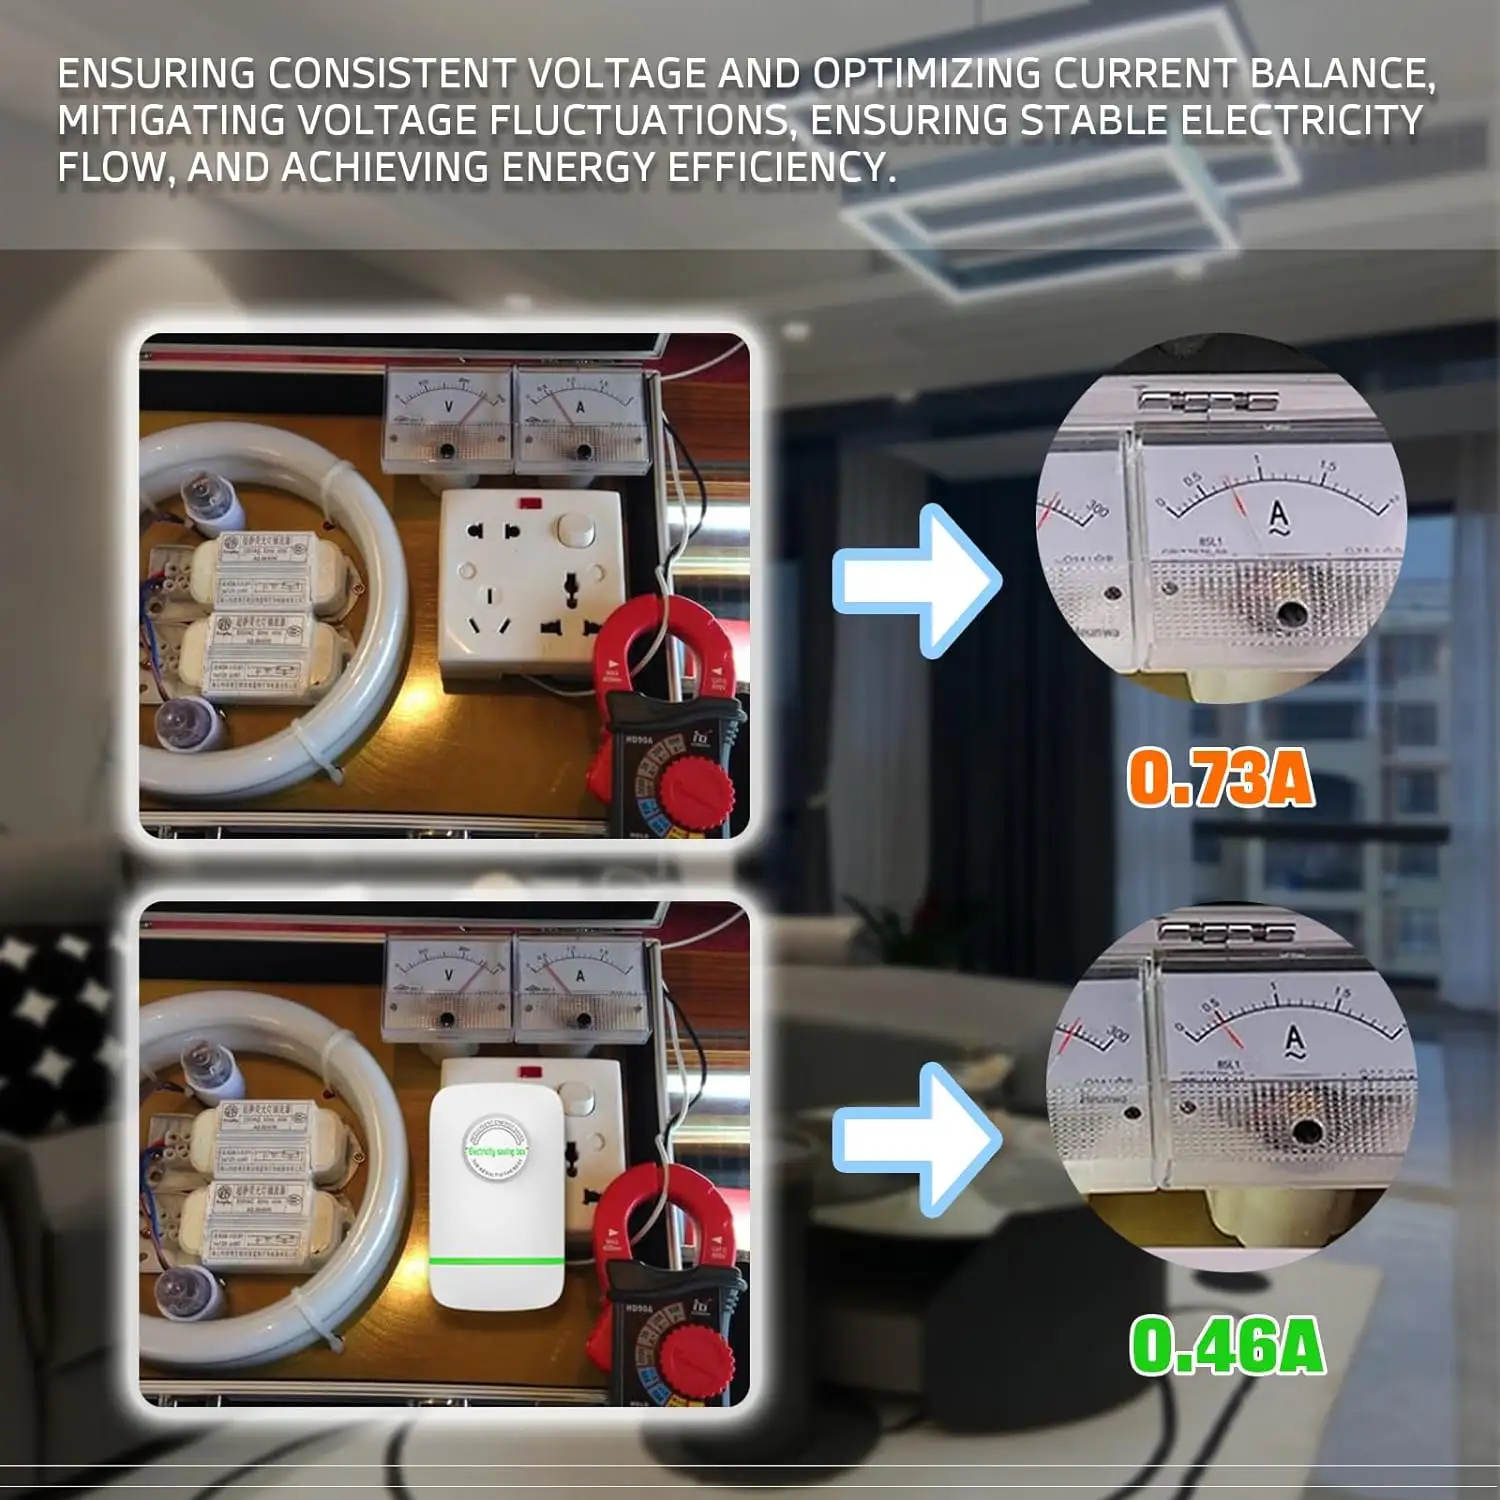 Design brevettato per uso domestico dispositivo intelligente per il risparmio energetico potenza 25KW per risparmio elettrico